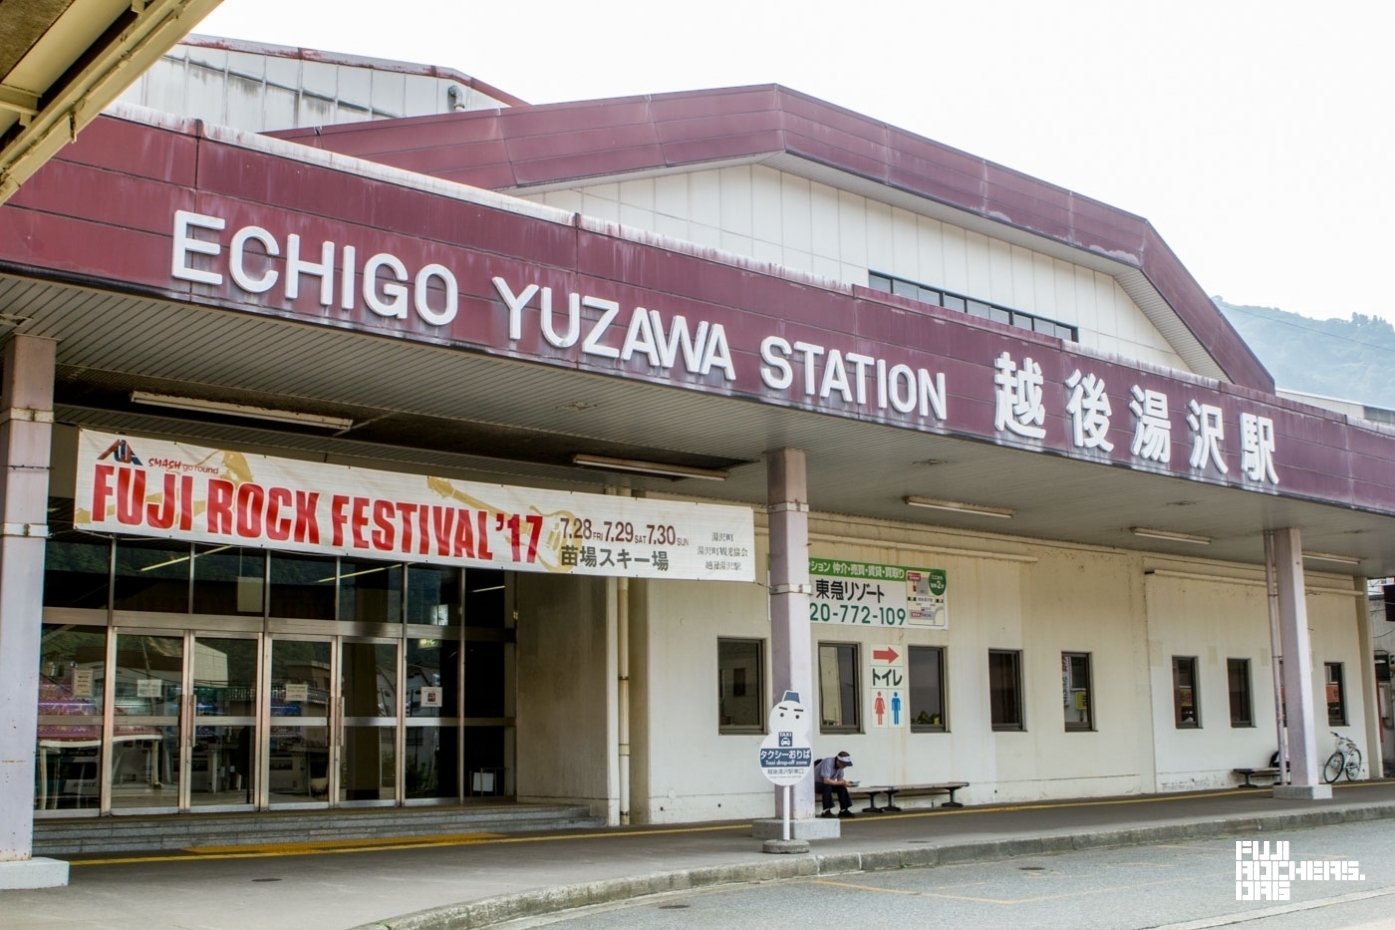 Echigo Yuzawa St. is ready for Fuji Rock!